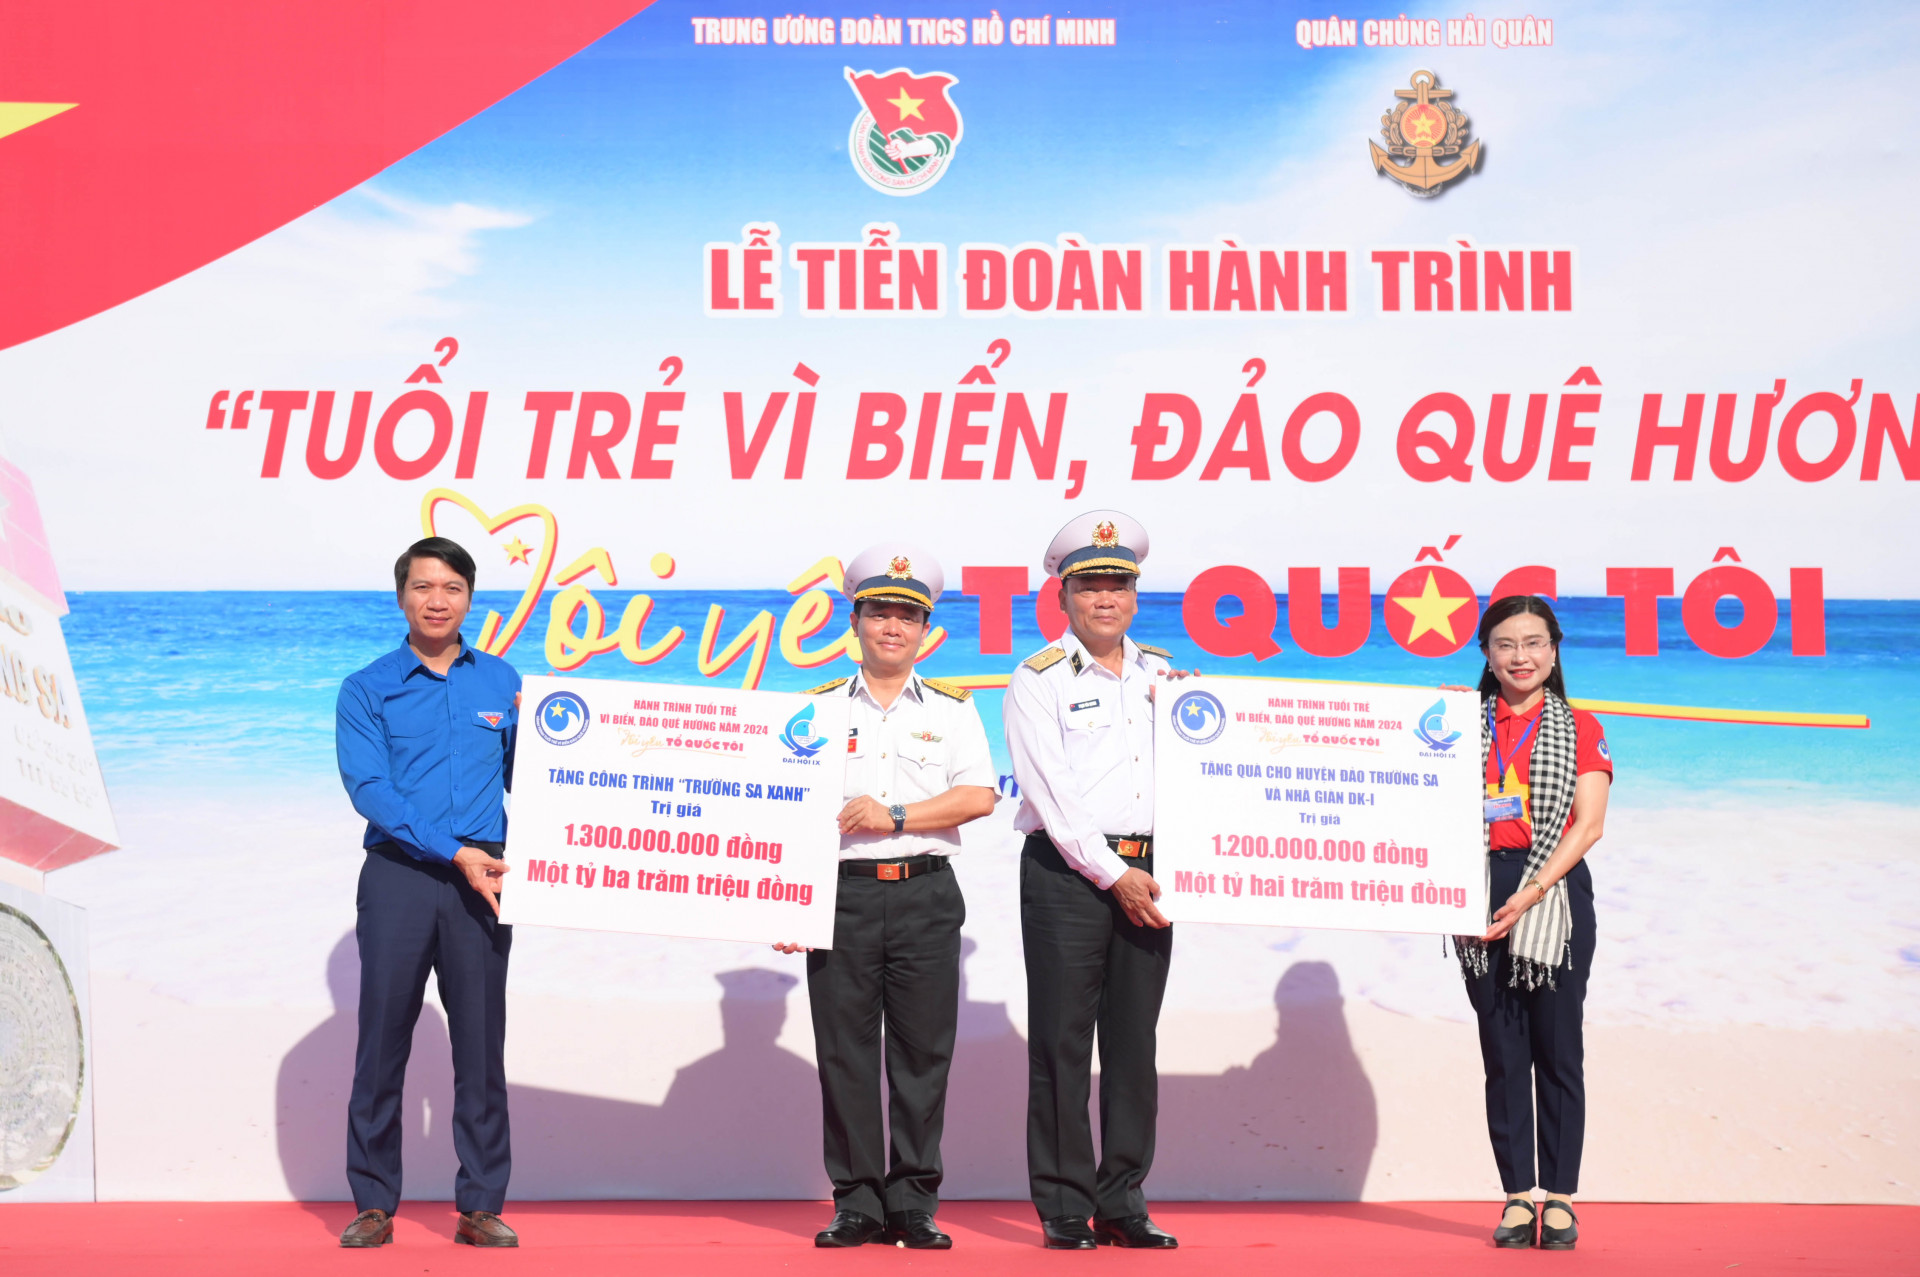 Lãnh đạo Trung ương Đoàn trao biểu trưng các phần quà, công trình sẽ trao cho quân và dân huyện đảo Trường Sa, nhà dàn DK-1.